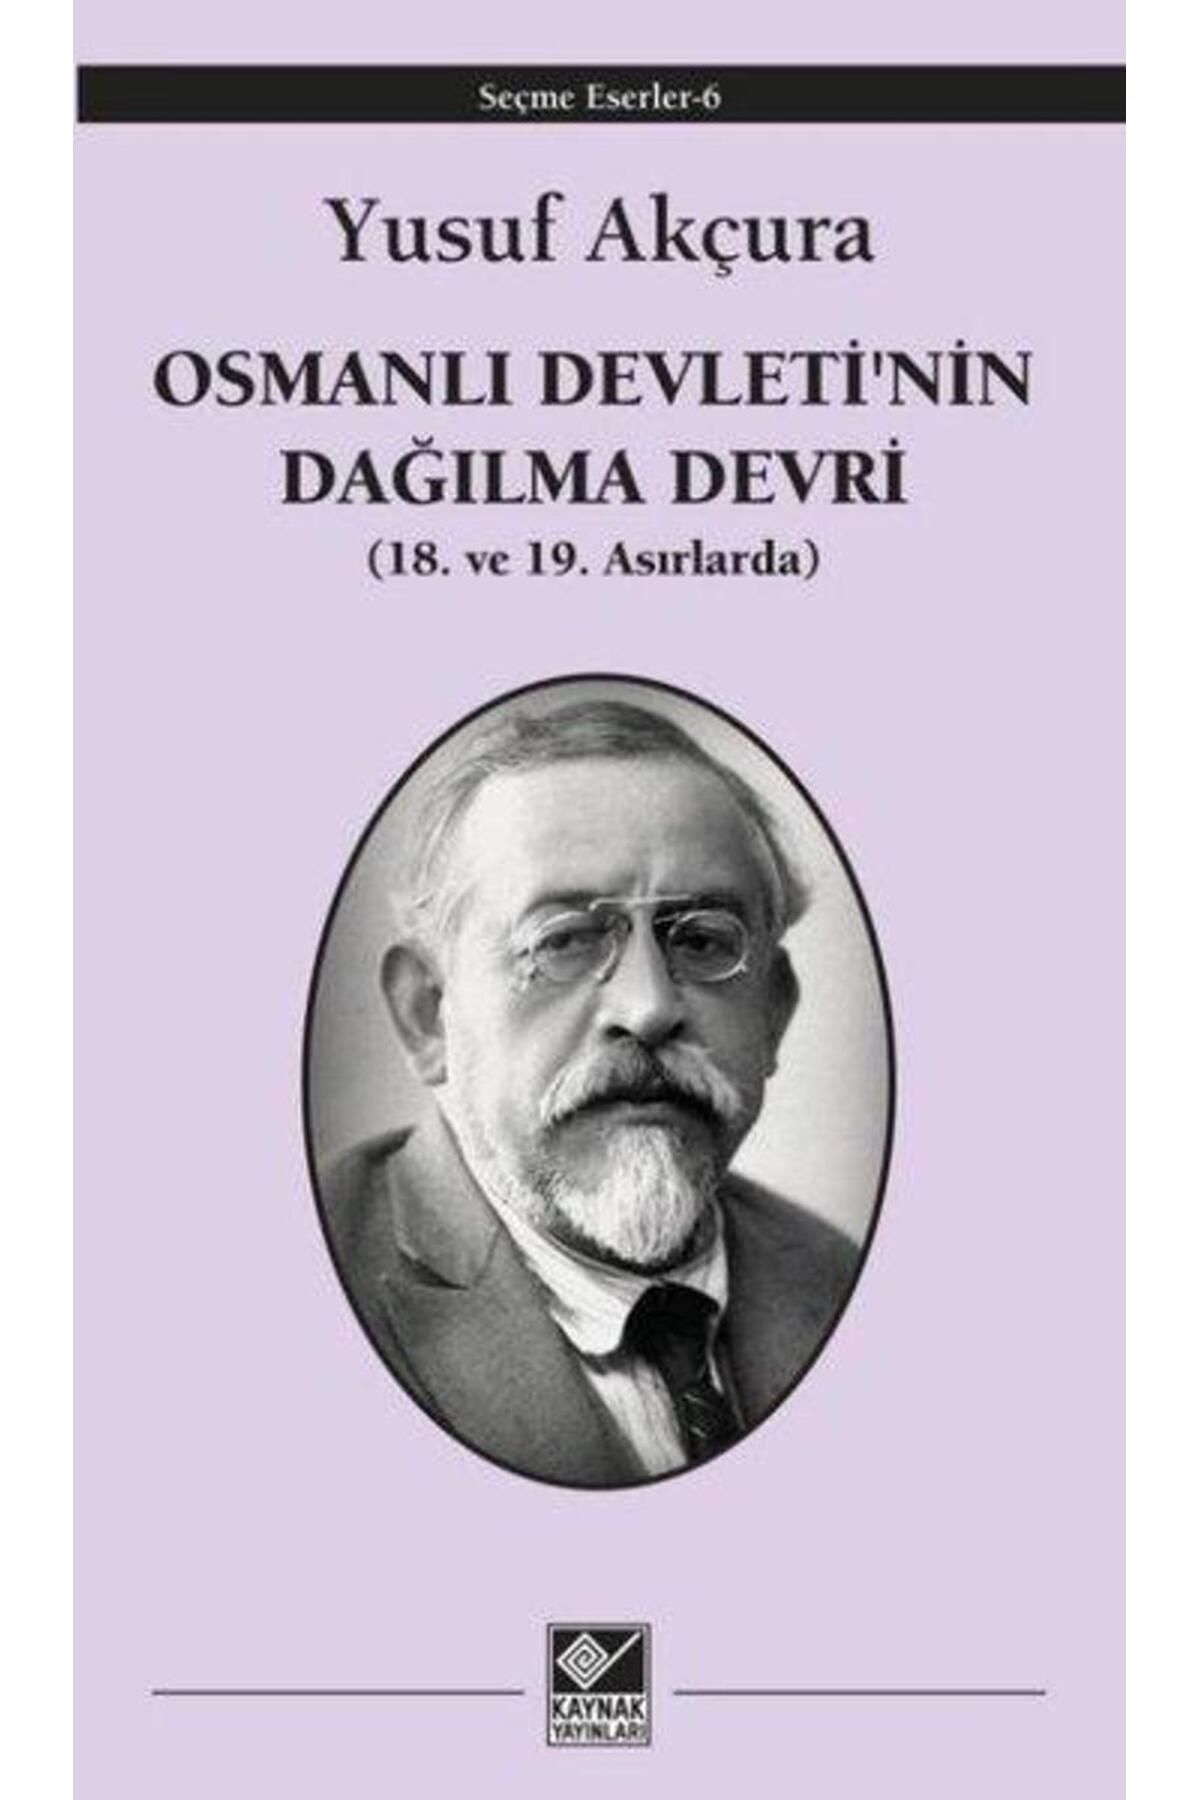 Kaynak Yayınları Osmanlı Devleti'nin Dağılma Devri 18. ve 19. Asırlarda